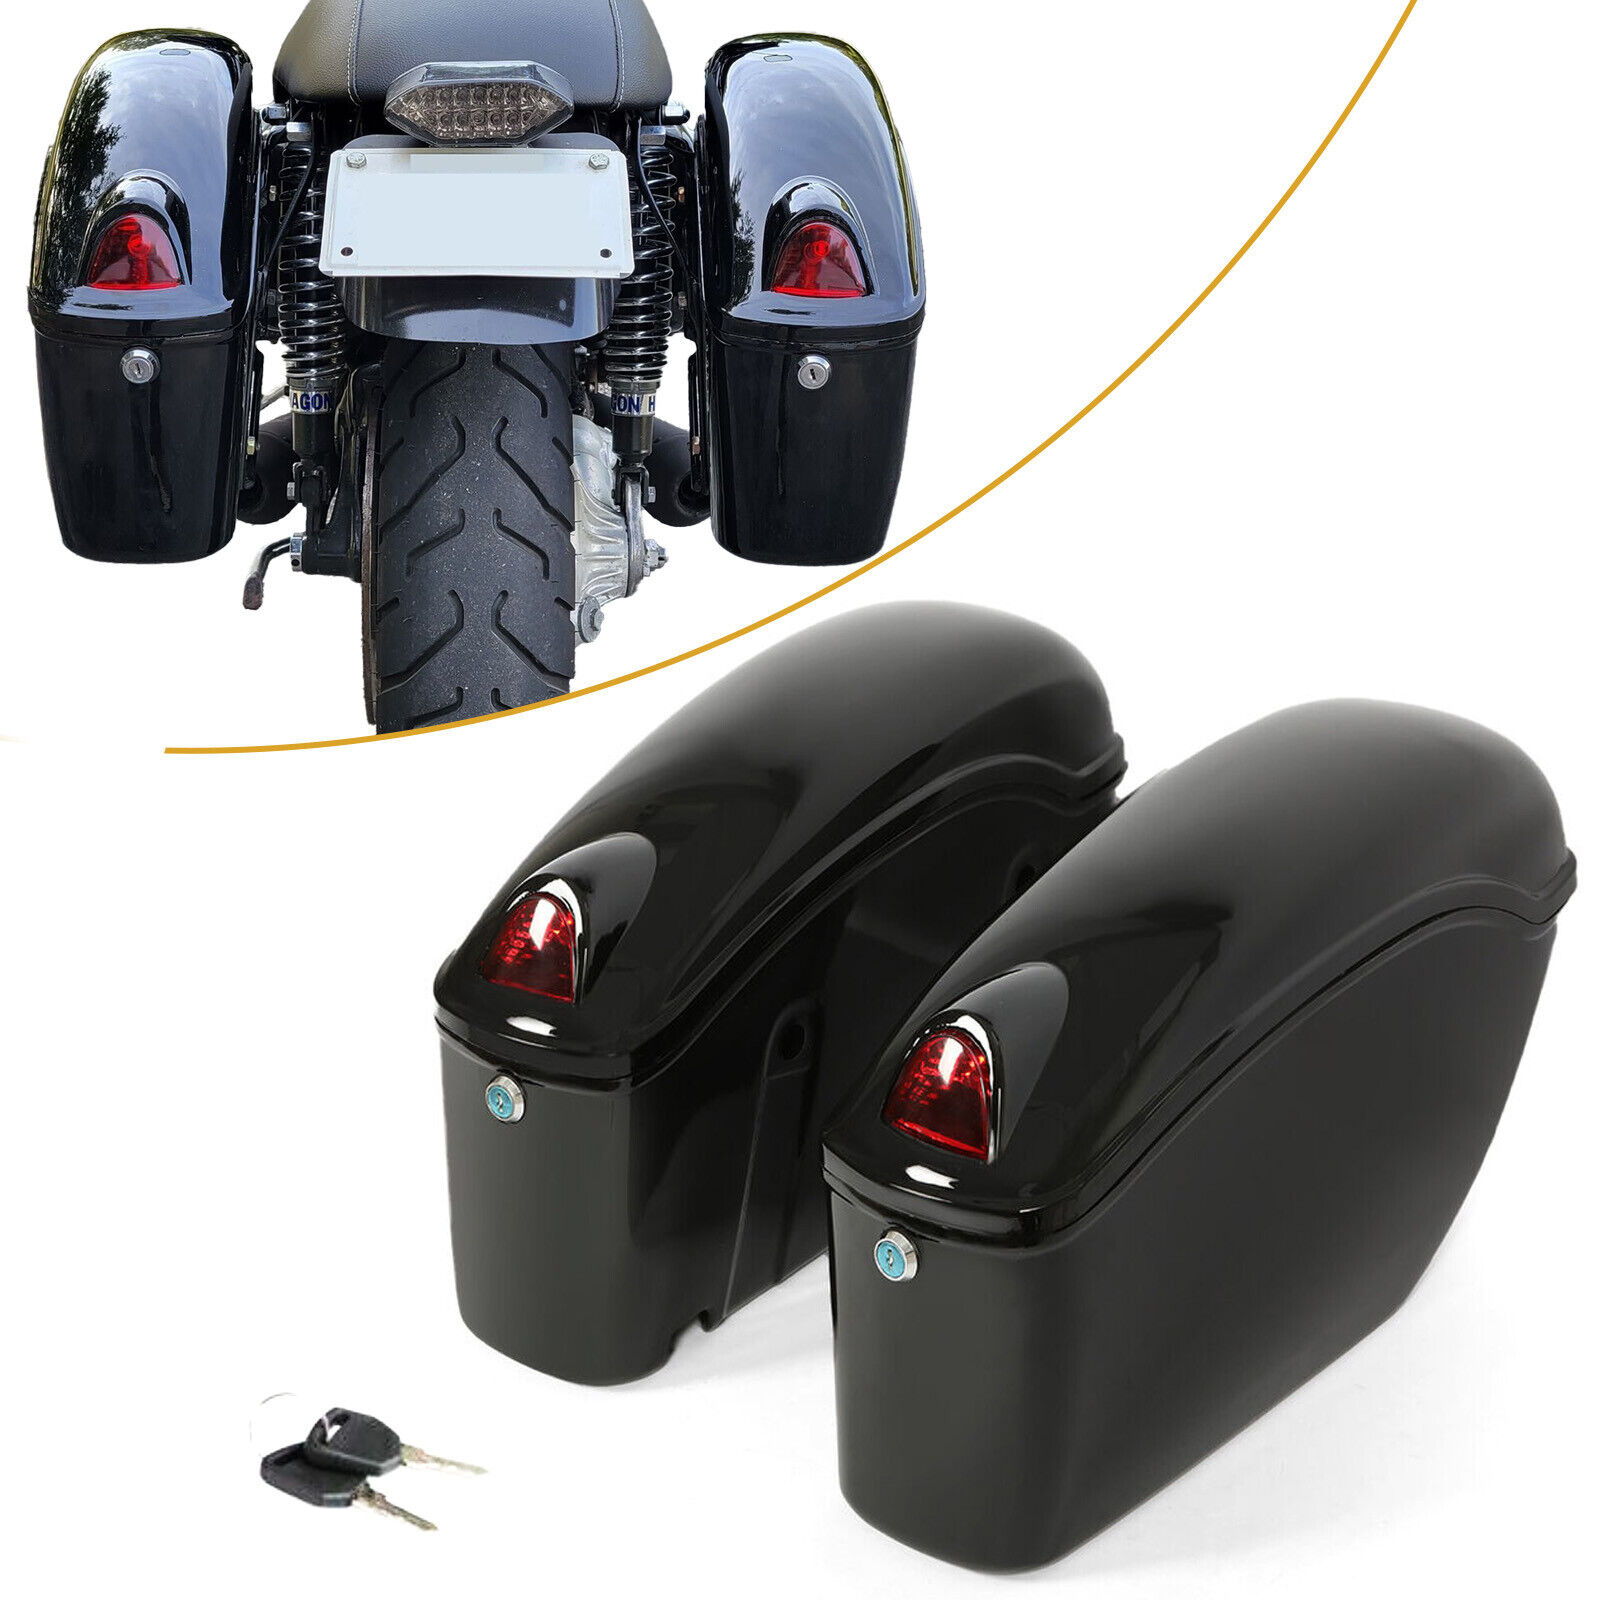 For Yamaha Cruiser Motorcycle Universal Luggage Hard Saddle Bags Black w/Light